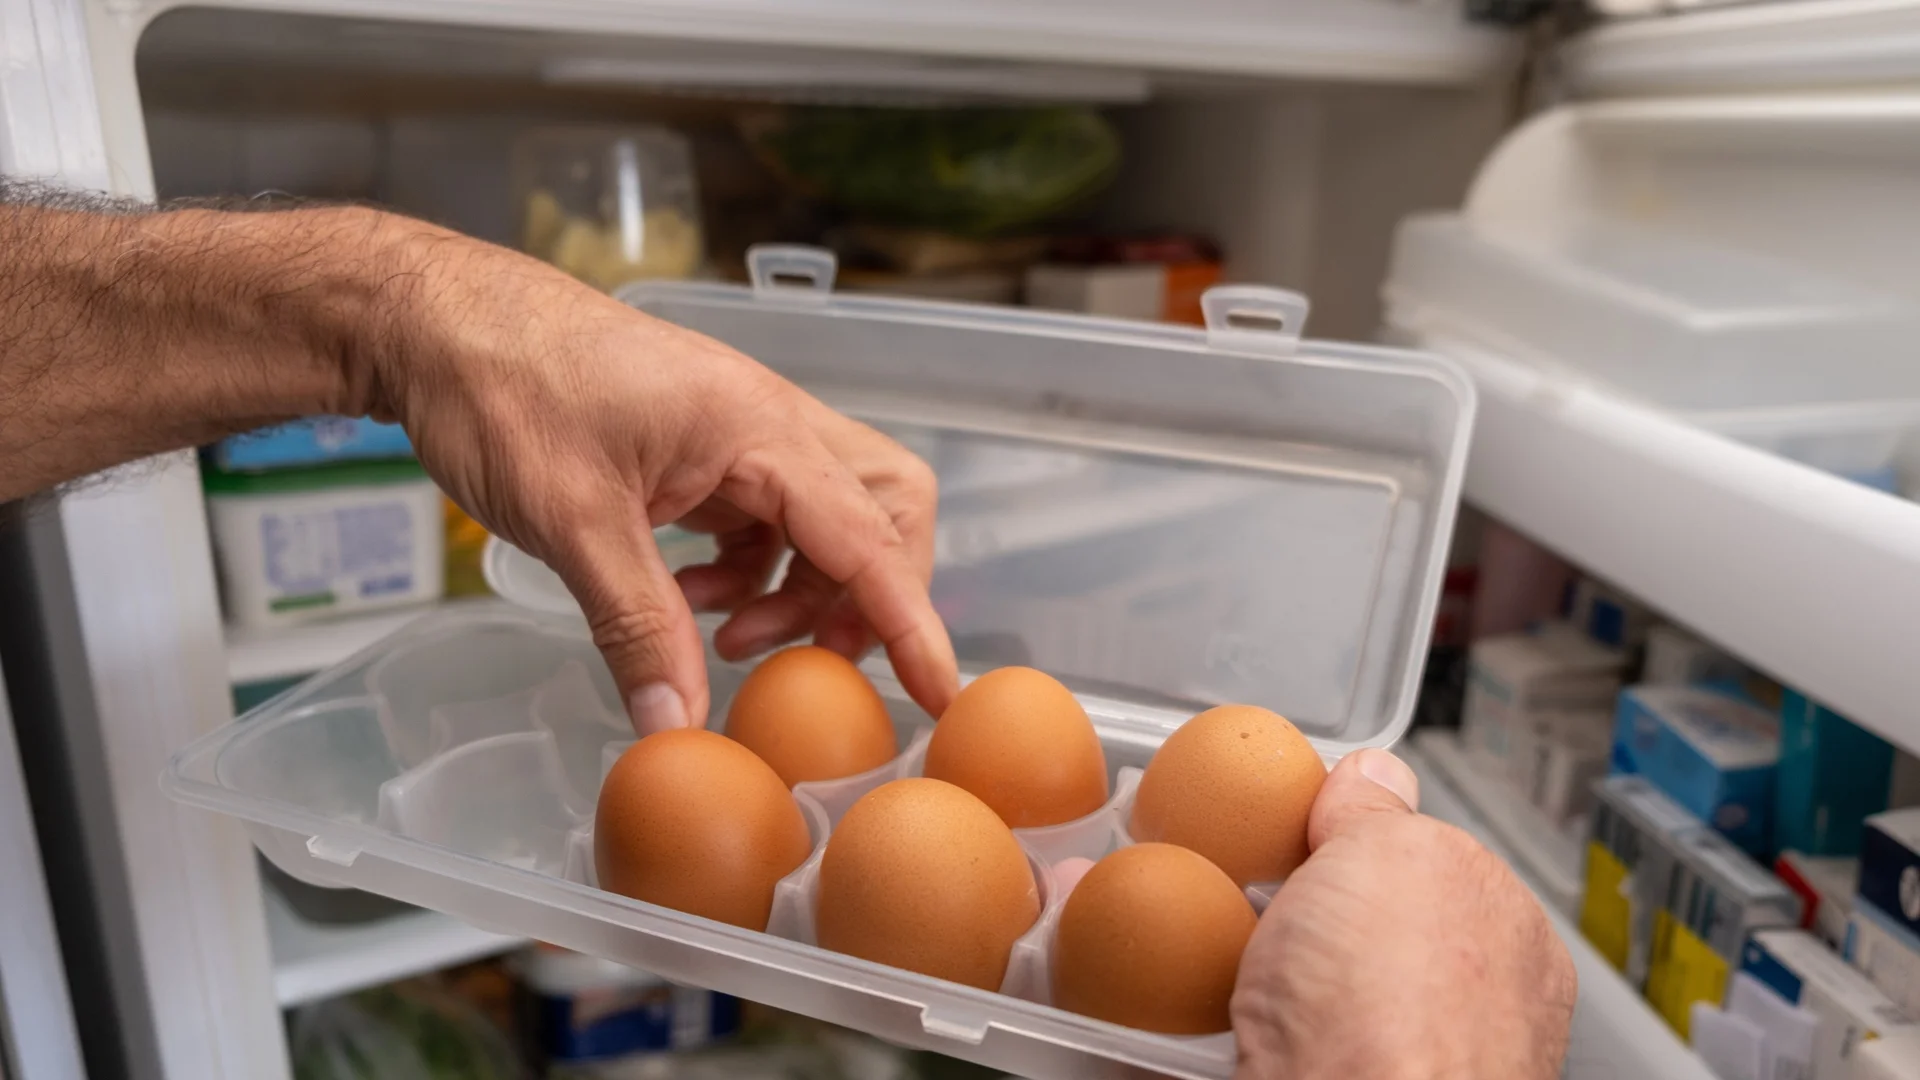 Как да проверим дали яйцата са пресни?